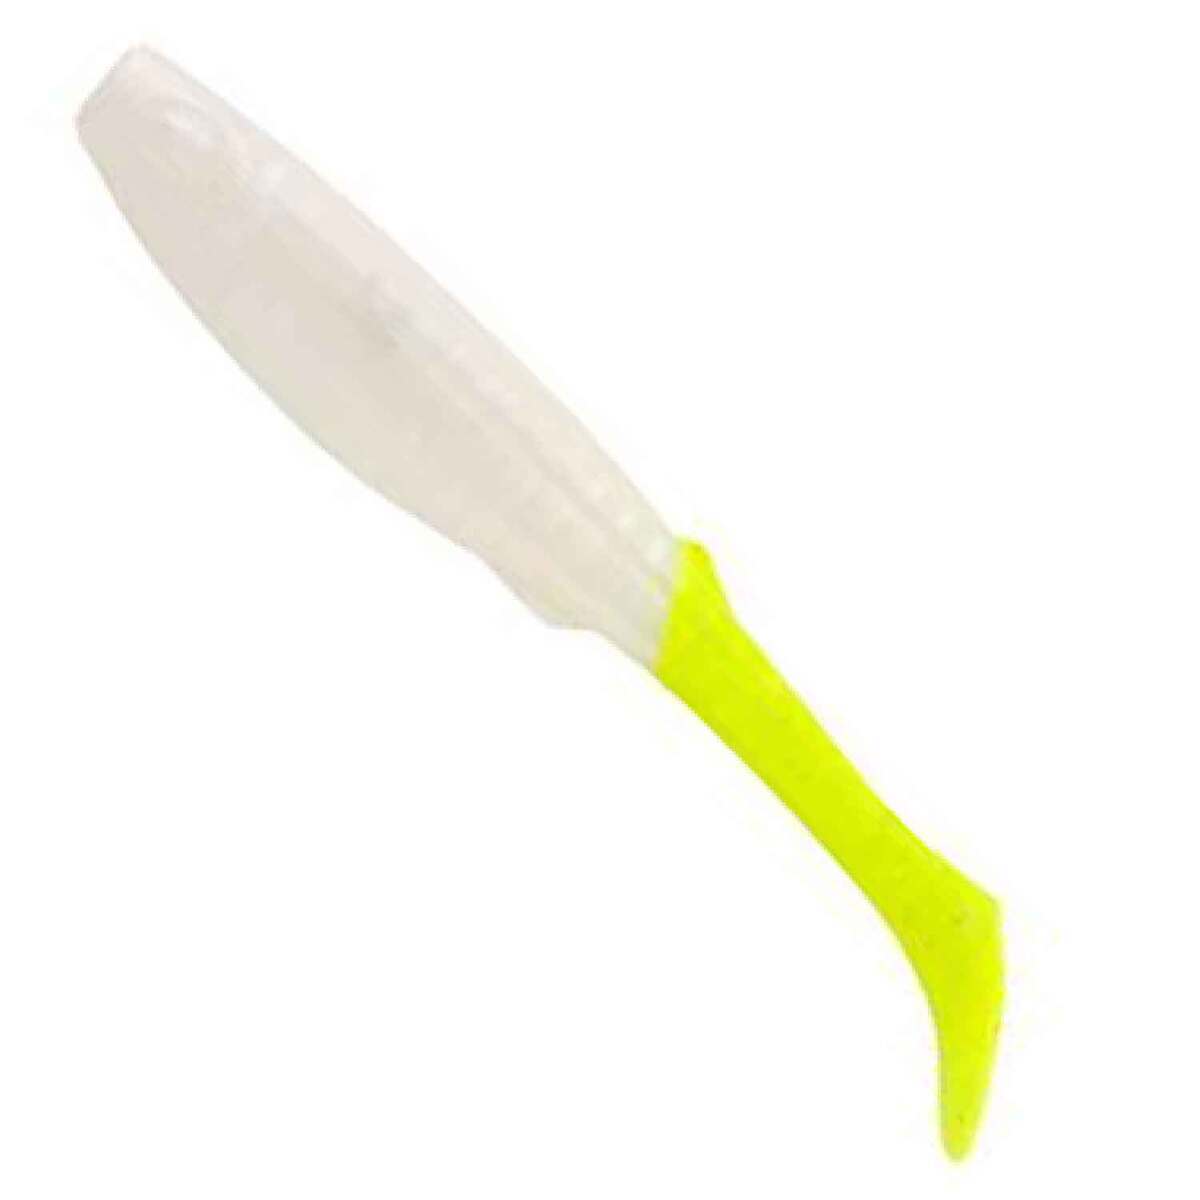 Berkley Gulp Paddleshad Soft Swimbait - Pearl White/Chartreuse, 5in